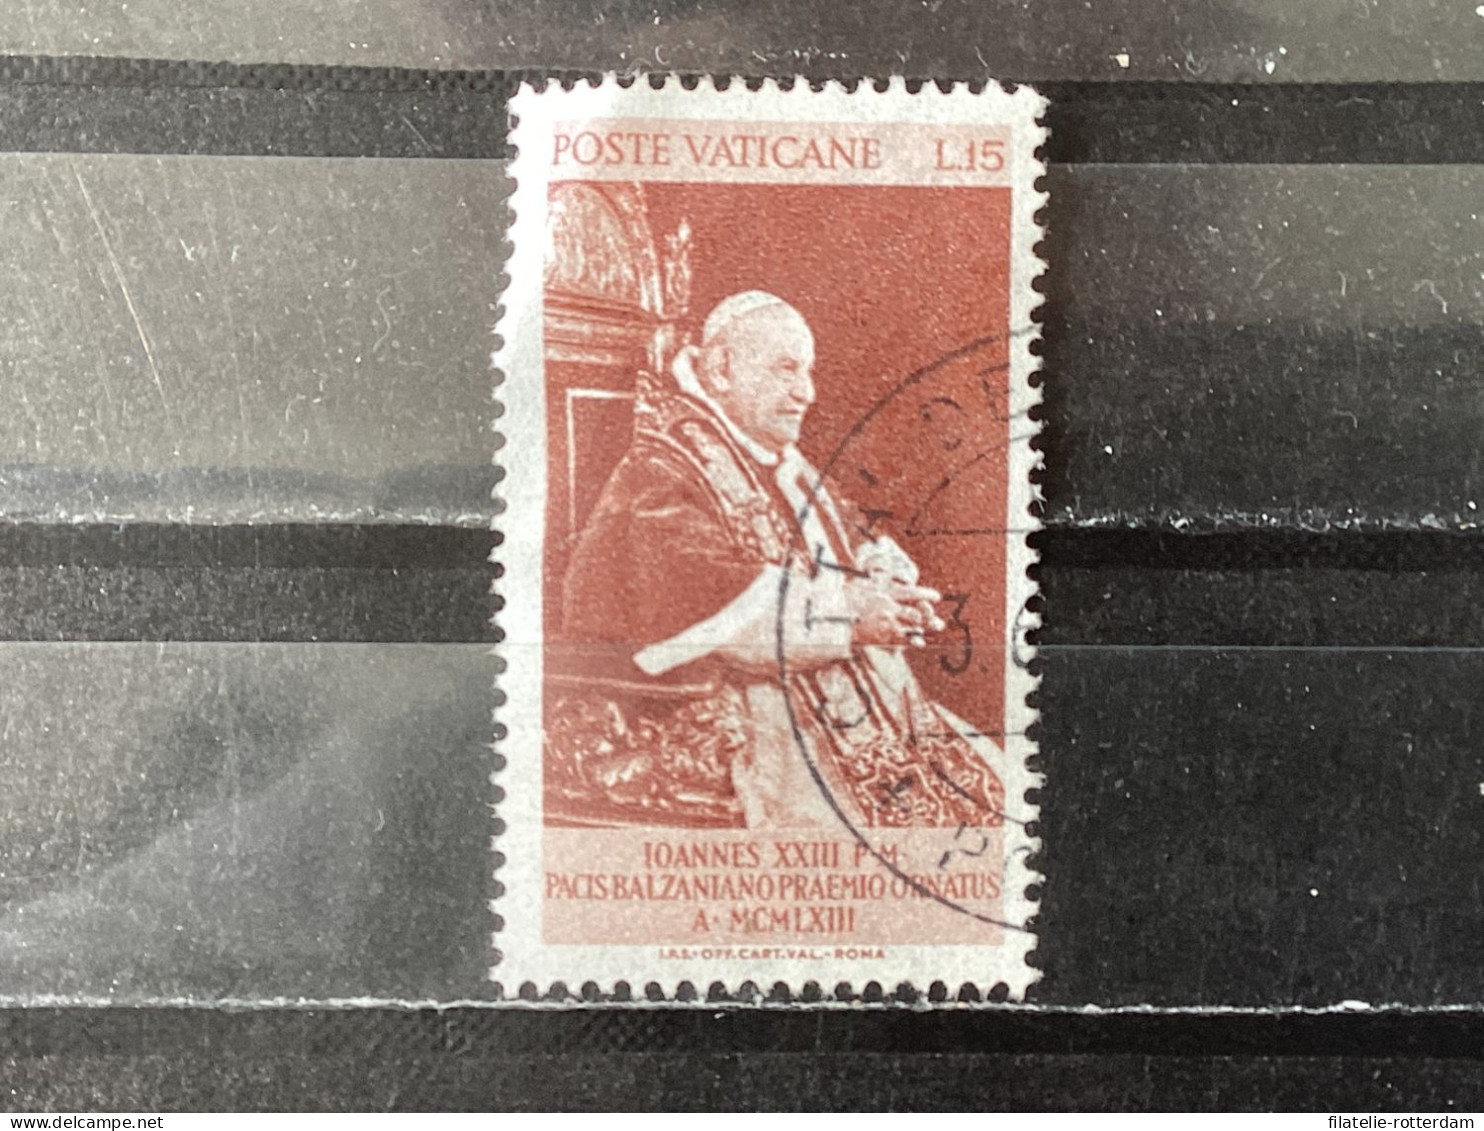 Vatican City / Vaticaanstad - Balzan Price For Peace (15) 1963 - Gebraucht